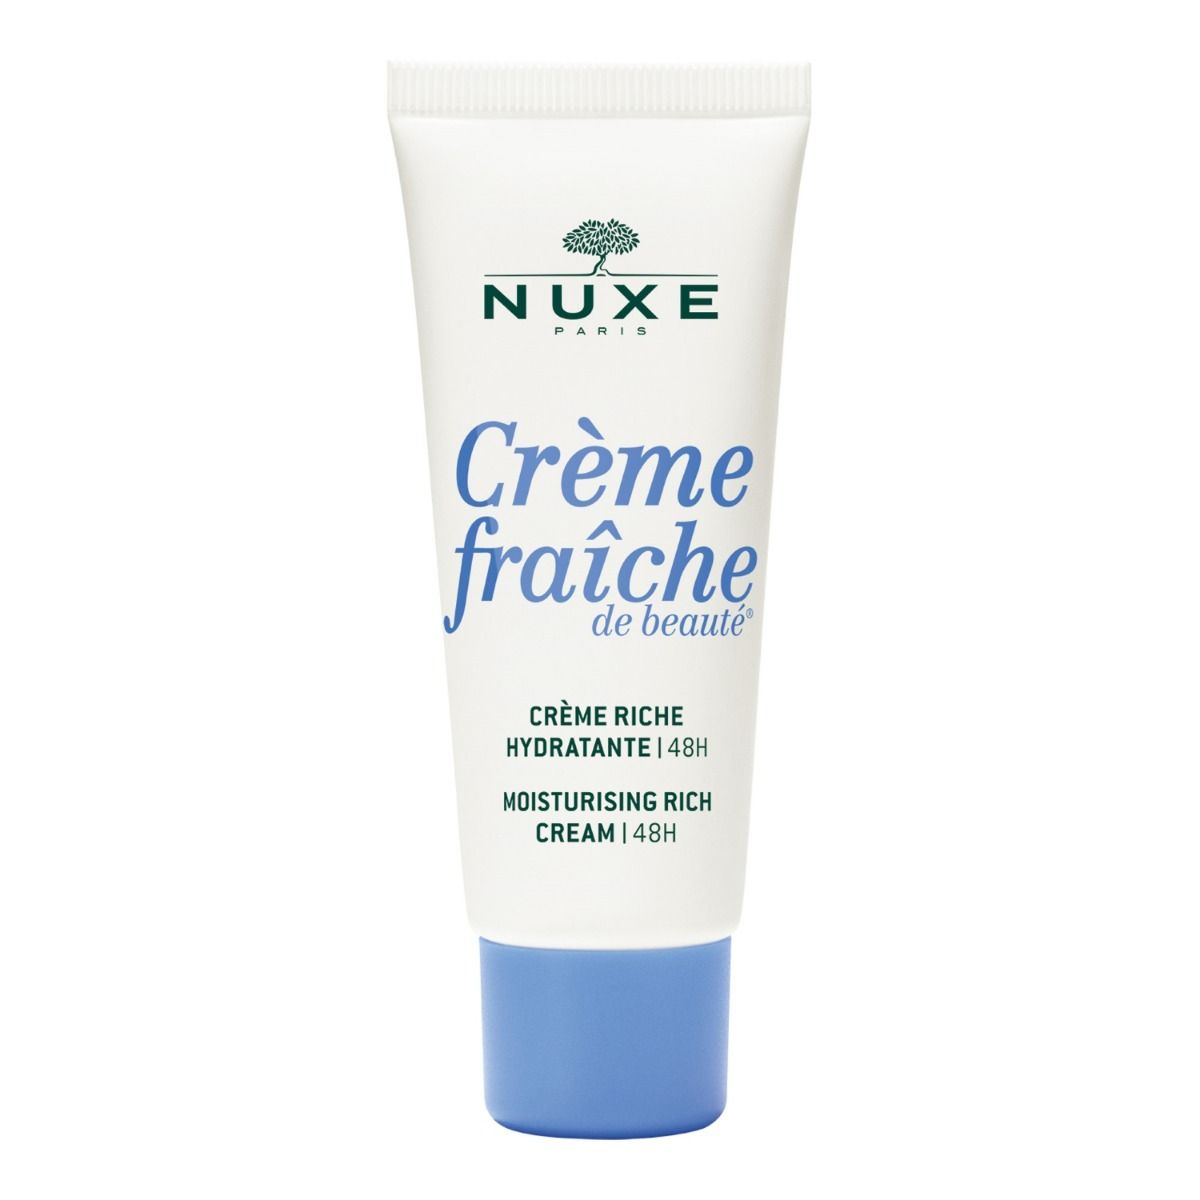 Nuxe Crème Fraîche de Beauté крем для лица, 30 ml nuxe crème fraîche de beauté крем для лица 30 ml